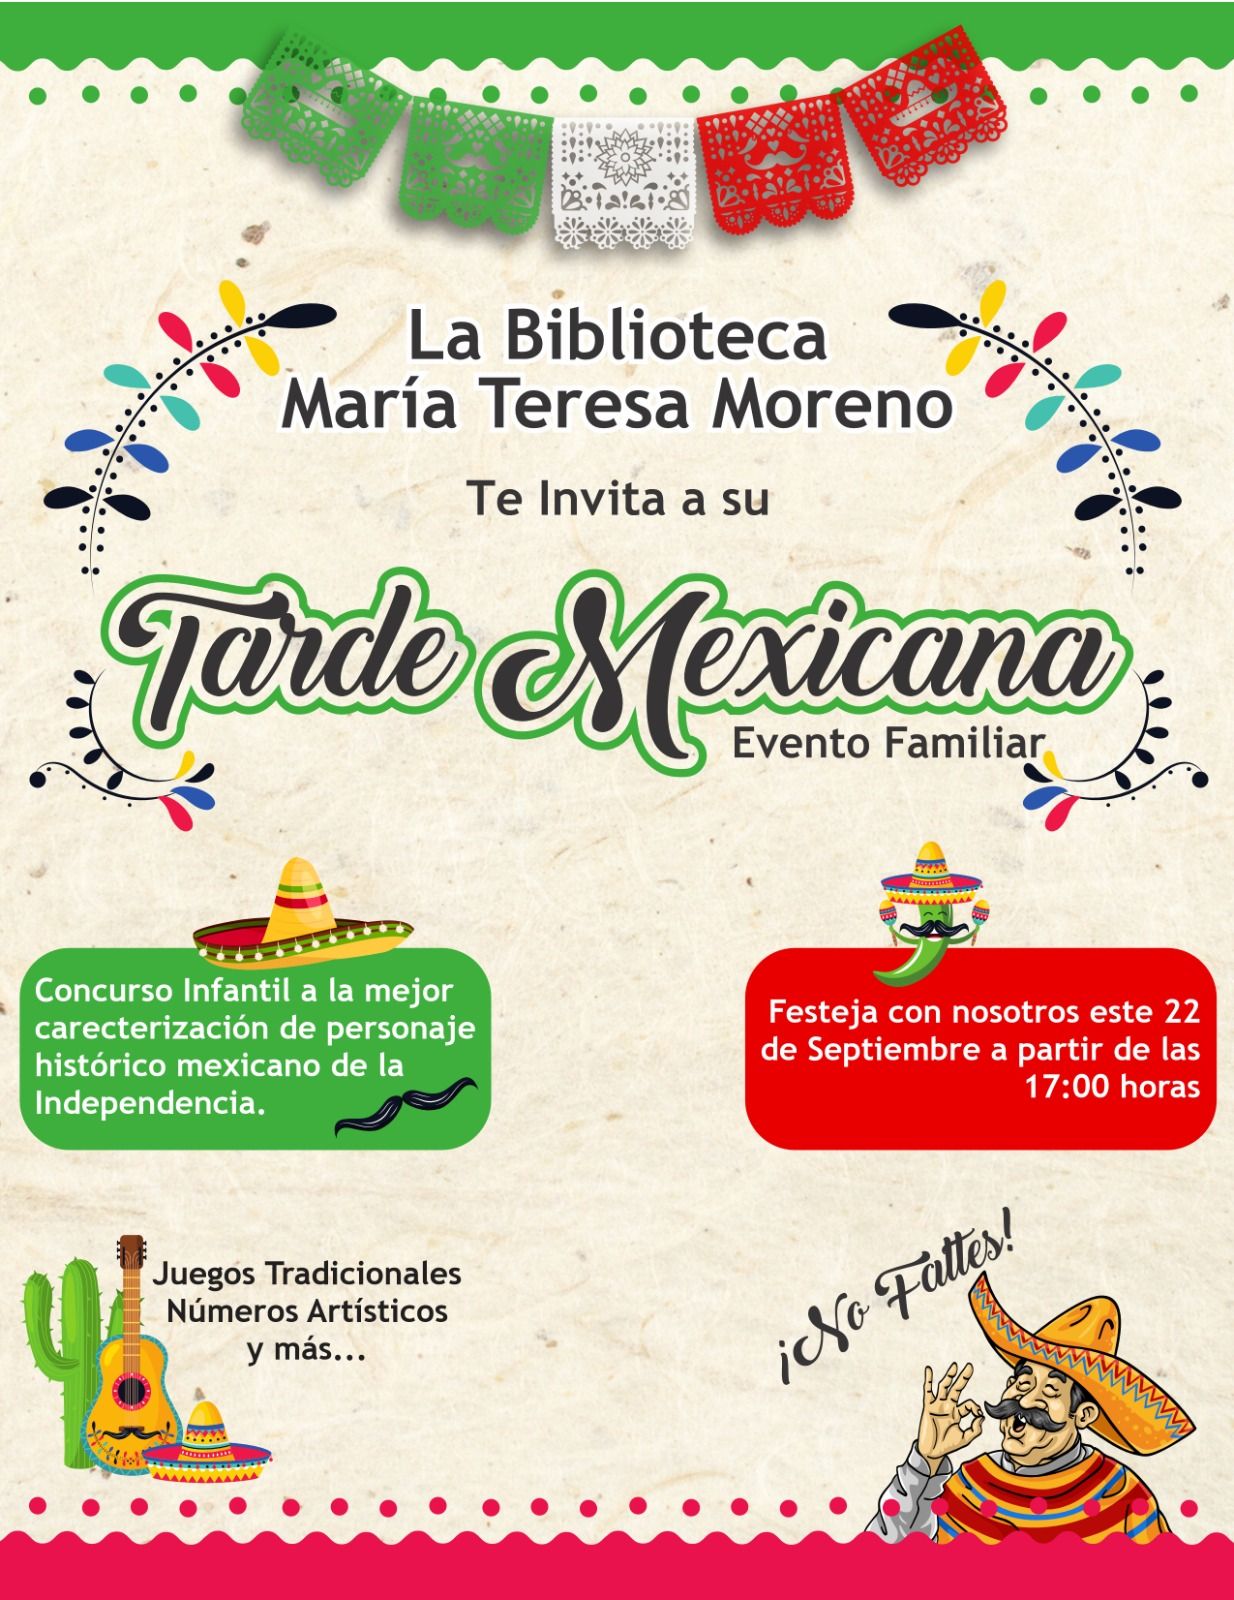 Invitan al evento cultural “Tarde Mexicana” en El Centenario